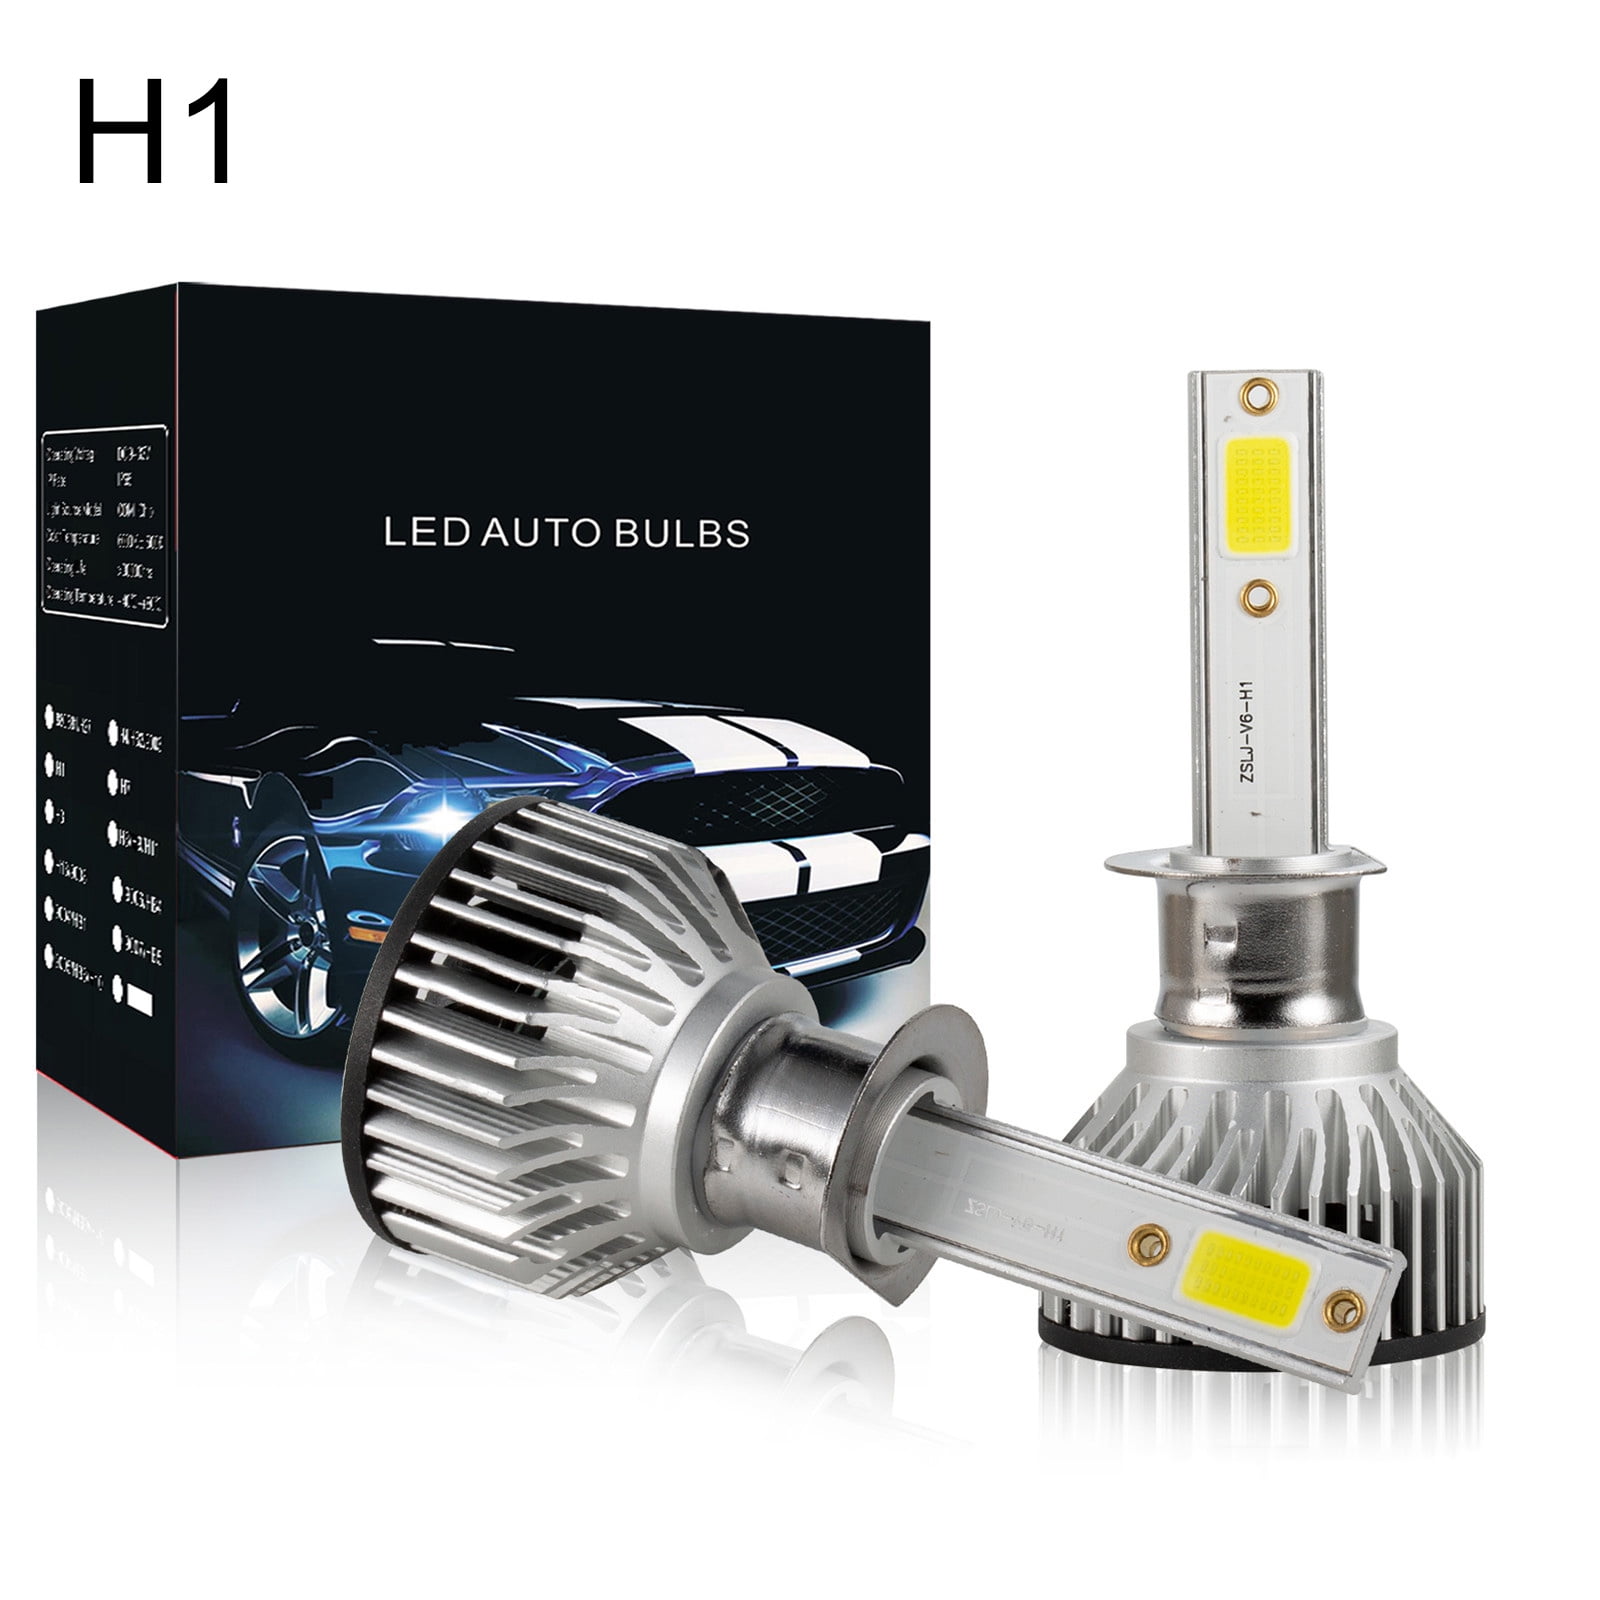 H15 led canbus led H7 H1 H11 H4 H1 Auto h7 led Car Headlight Automobile  Bulb Lamp H15 led Bulbs Fog Light